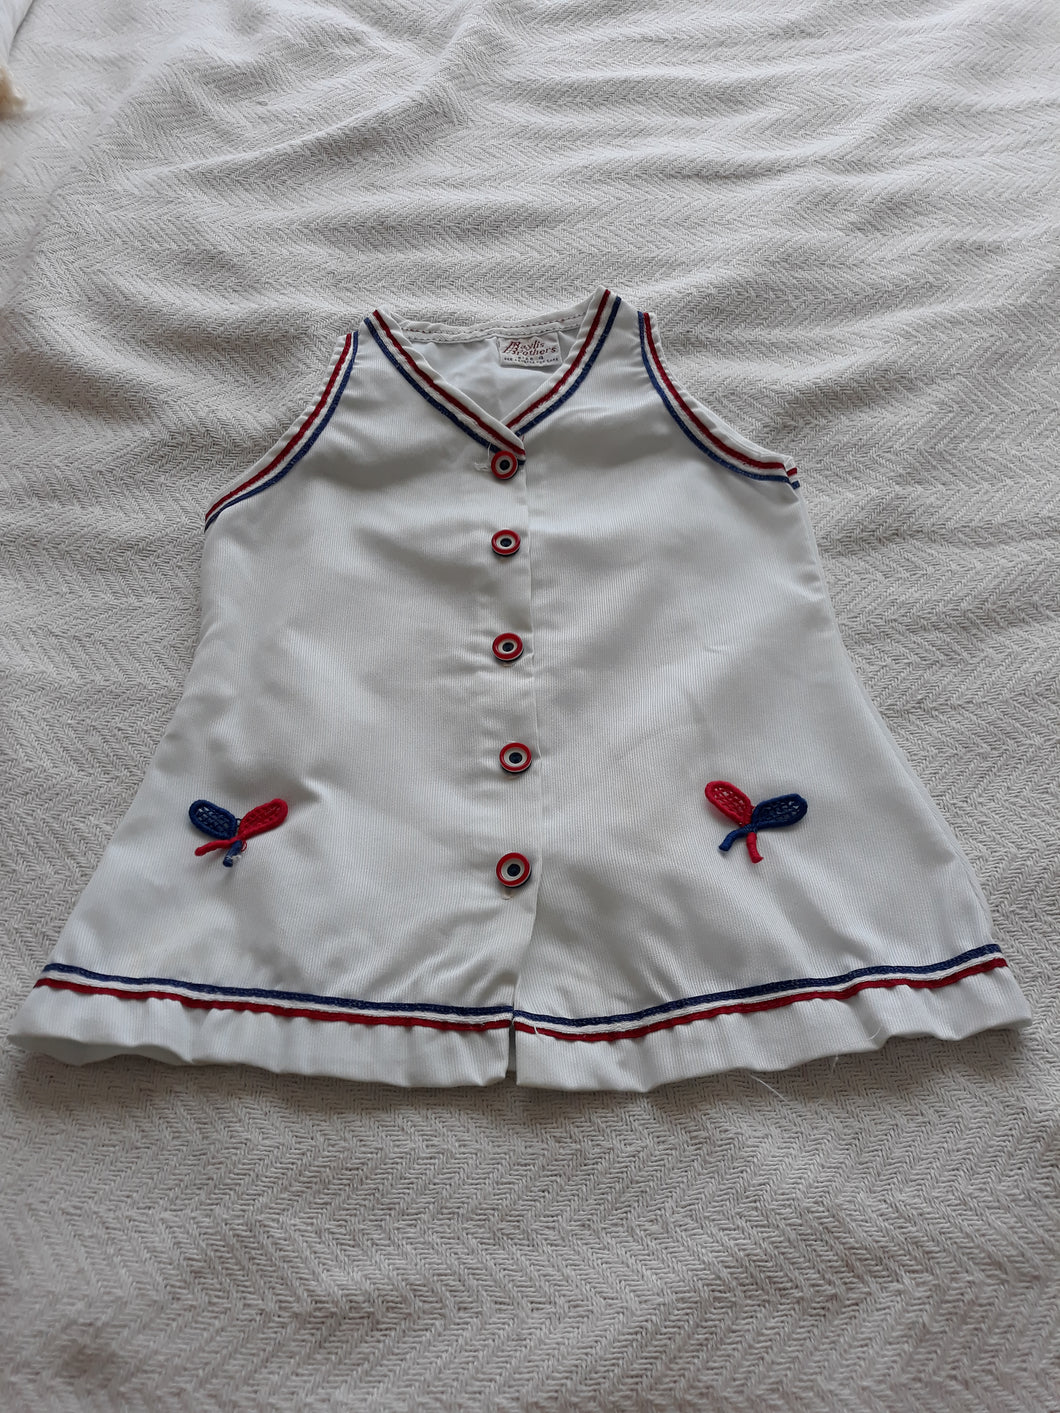 Vintage Little Girl's Tennis Dress (K56)